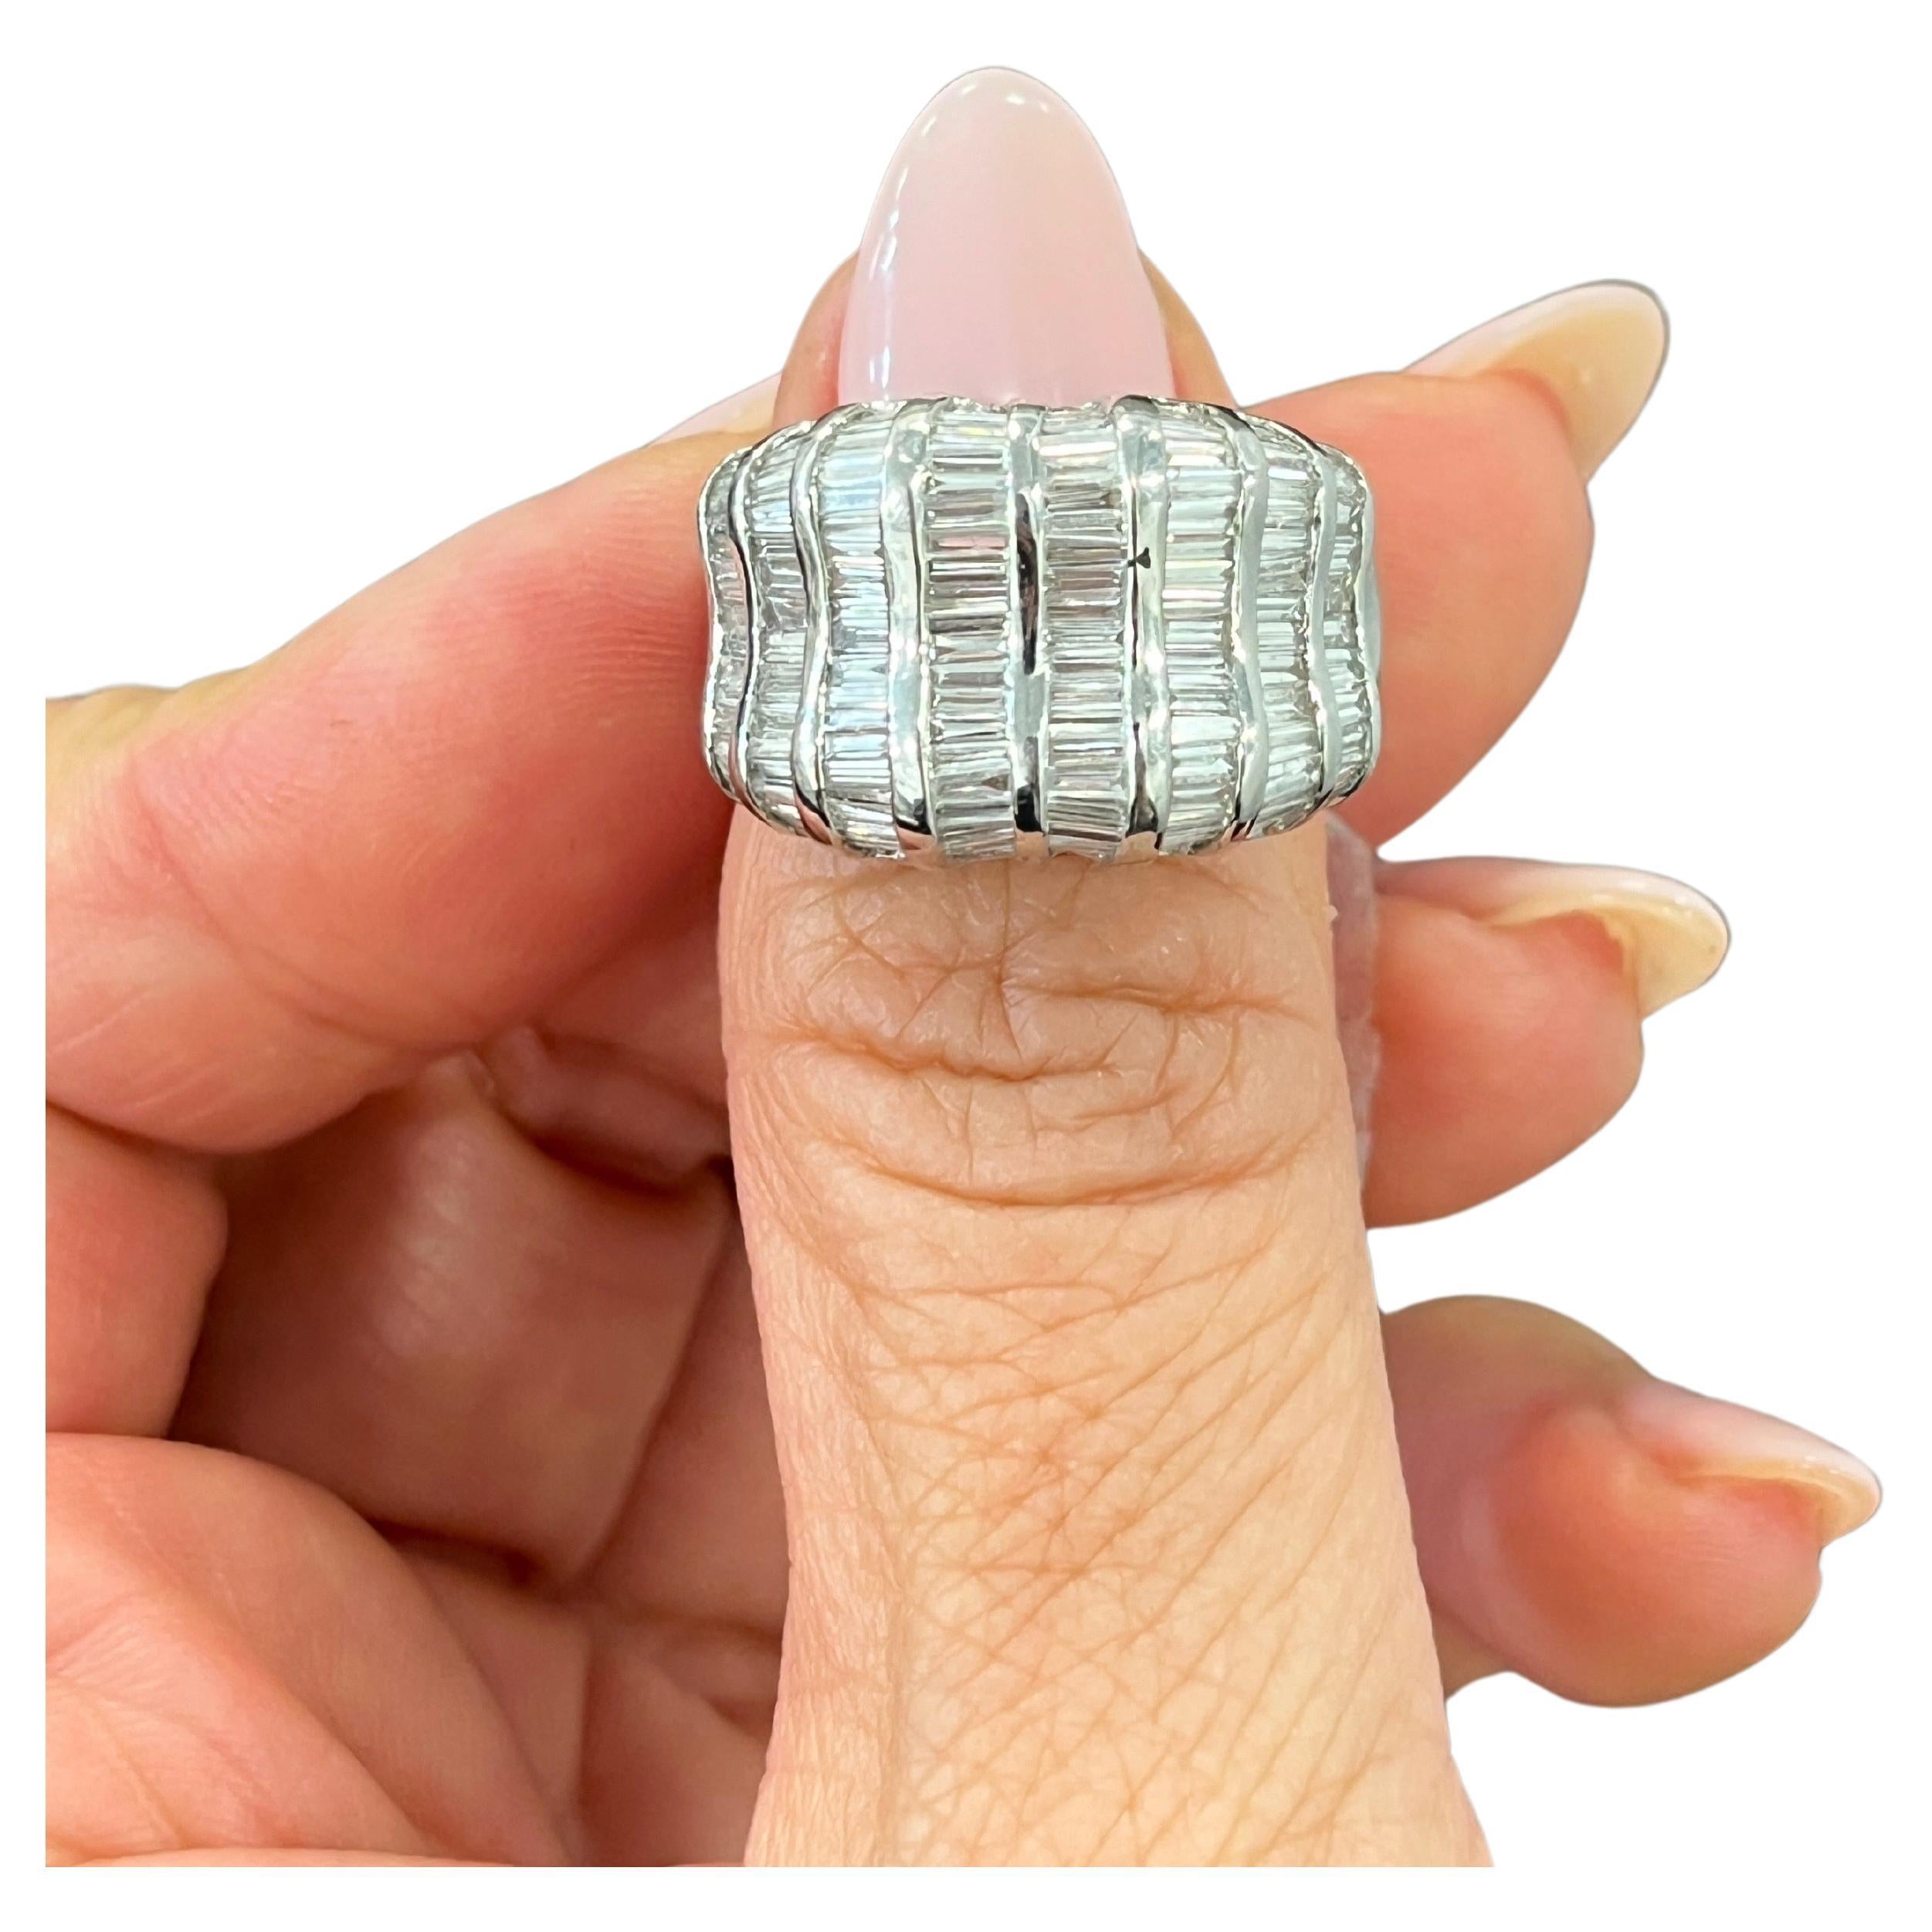 Dieser exquisite Ring ist ein atemberaubendes Schmuckstück mit einem 3,48 Karat schweren Diamanten im Baguetteschliff, der in 18 Karat Weißgold gefasst ist. Die Diamanten haben einen Reinheitsgrad von VS1/VS2 und einen Farbgrad von G/H und werden